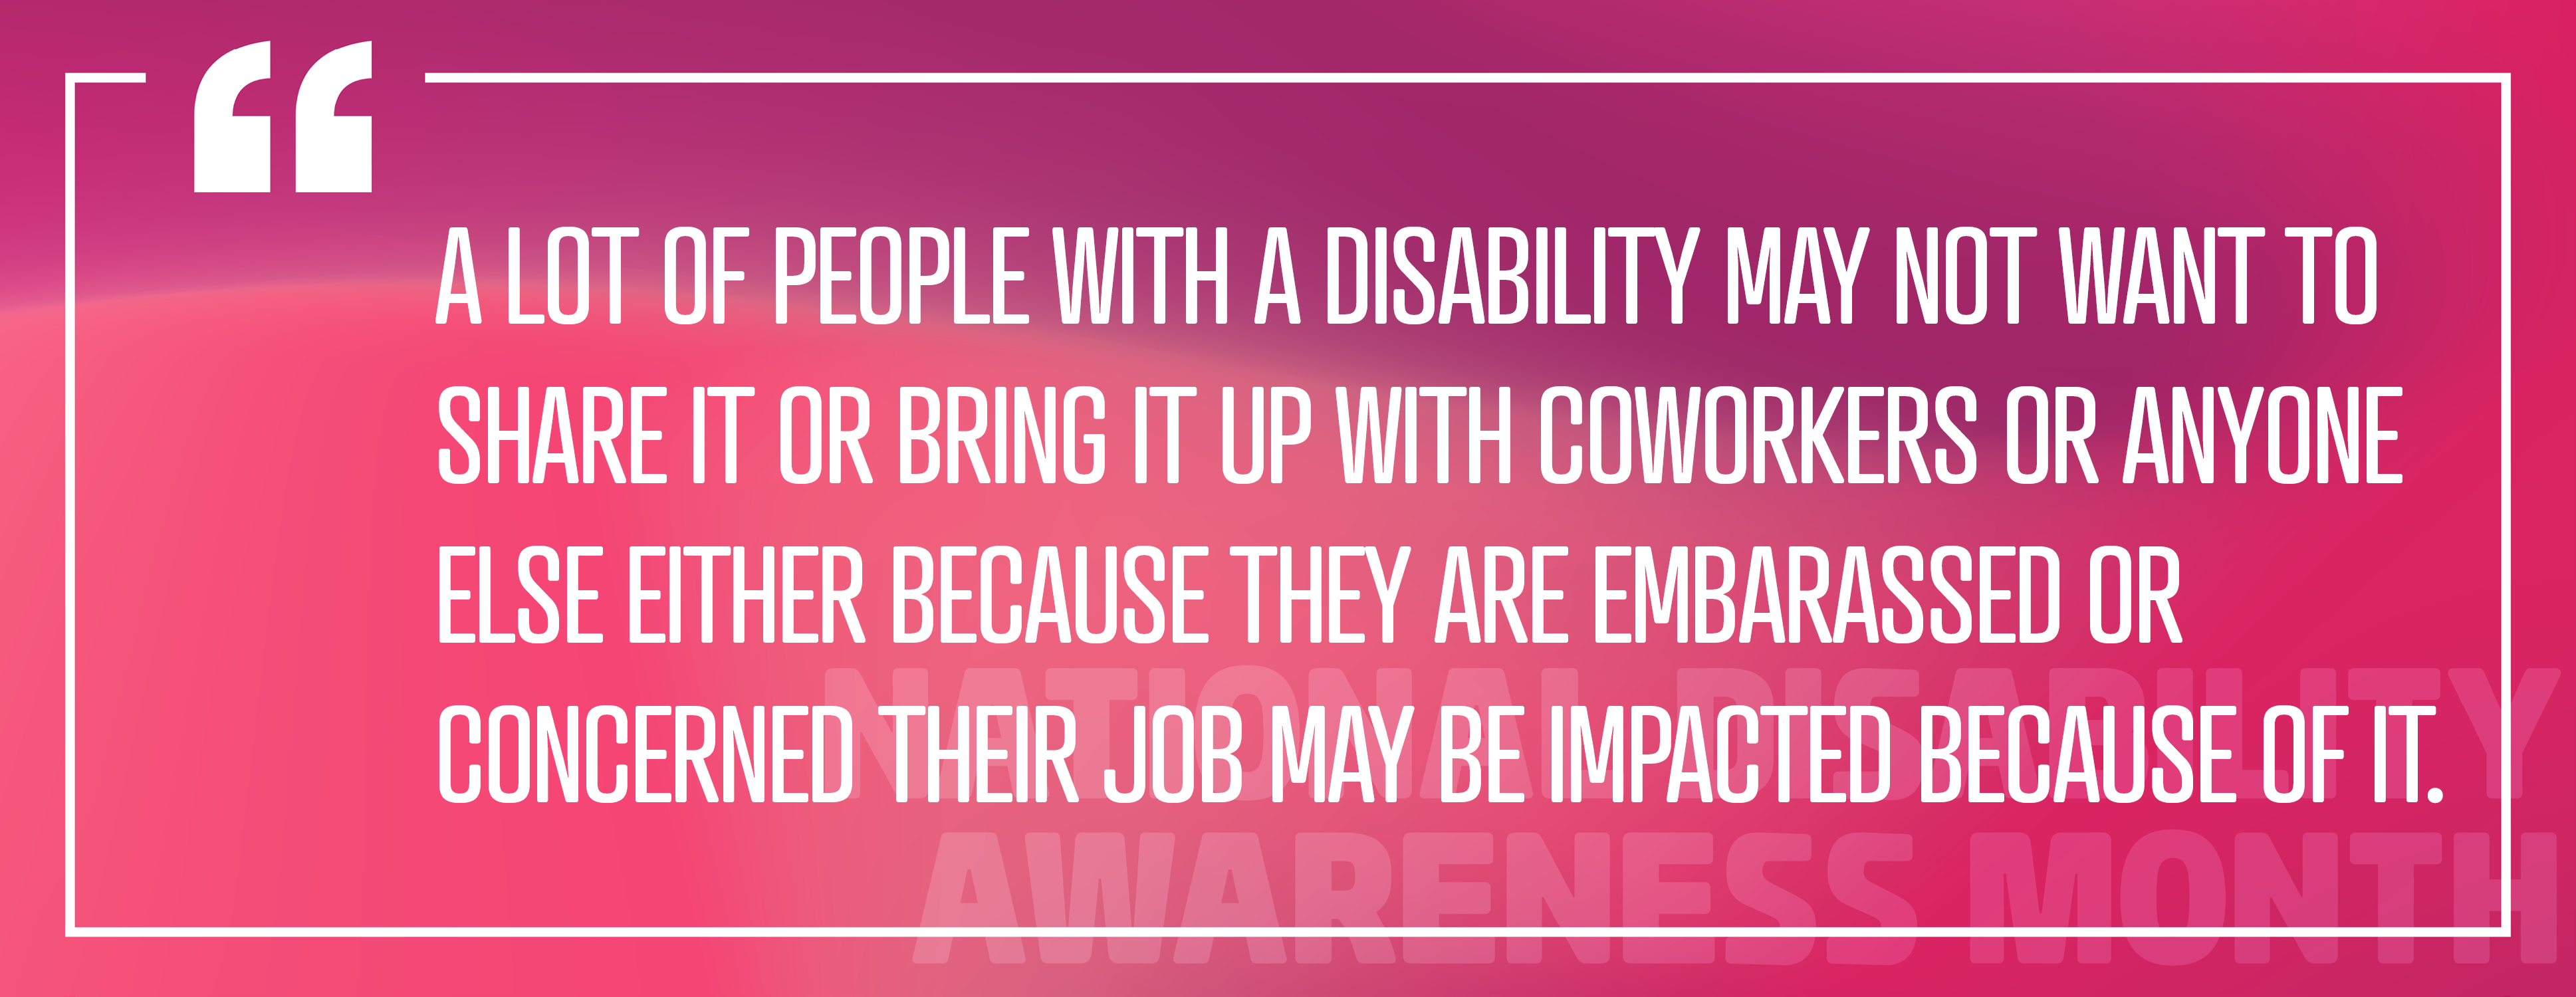 Imagen 3: Empleo de personas con discapacidad